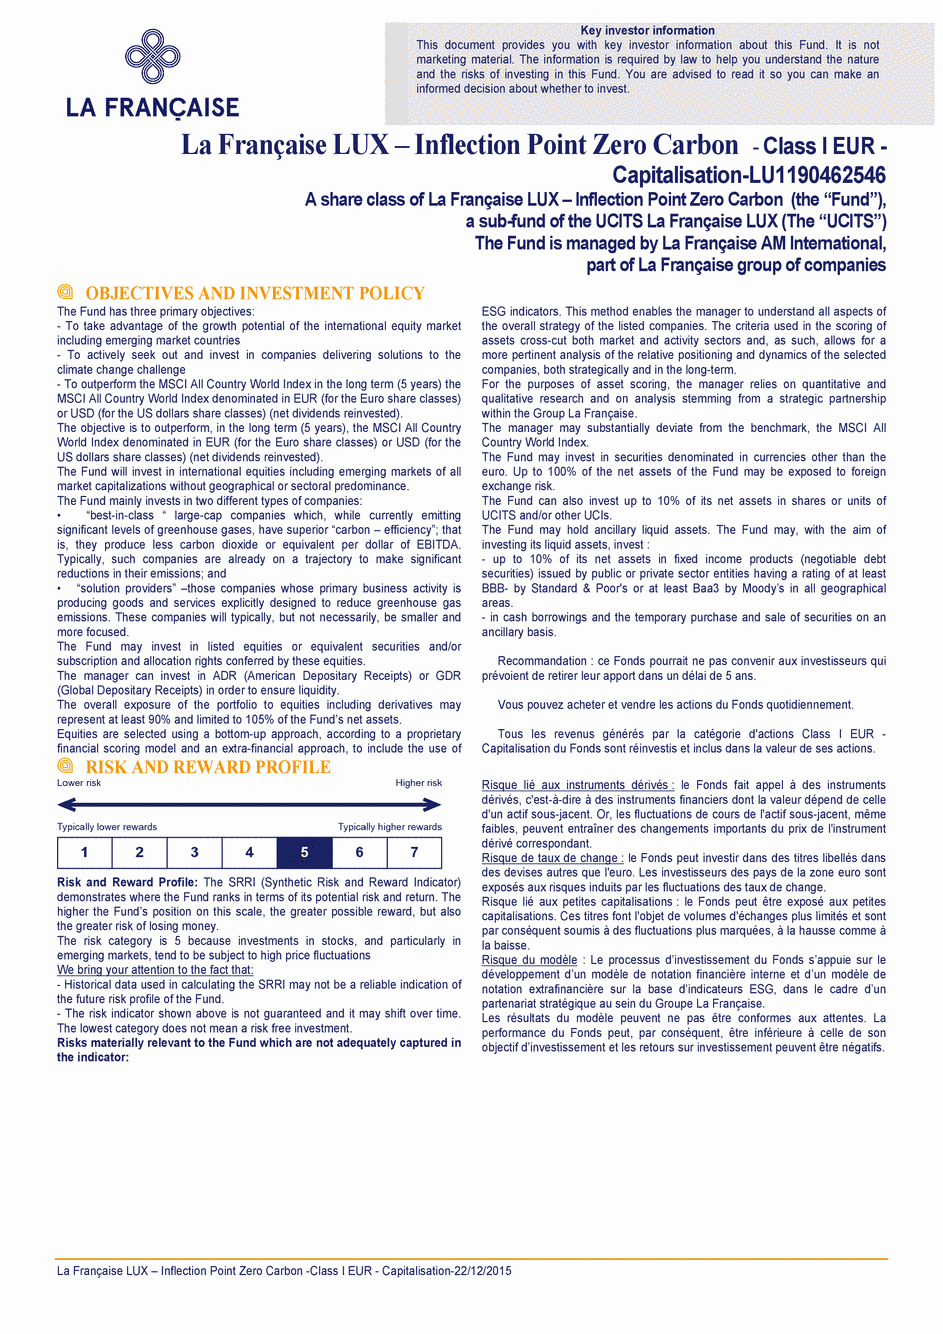 DICI La Française LUX - Inflection Point Carbon Impact Global - Class S EUR - 22/12/2015 - Français